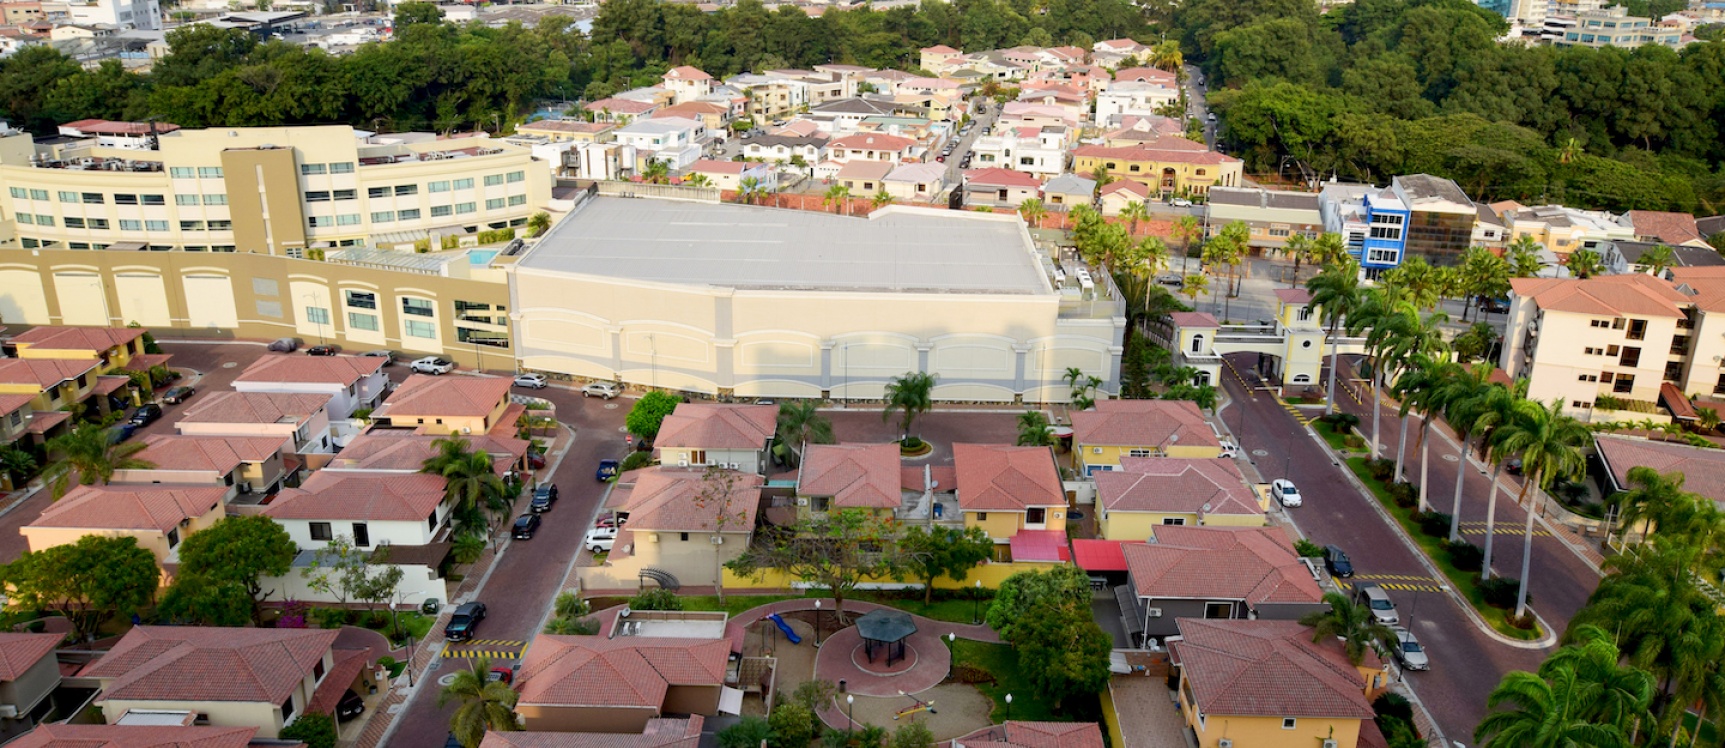 GeoBienes - Departamento en alquiler ubicado en Ciudad Colón, Norte de Guayaquil - Plusvalia Guayaquil Casas de venta y alquiler Inmobiliaria Ecuador